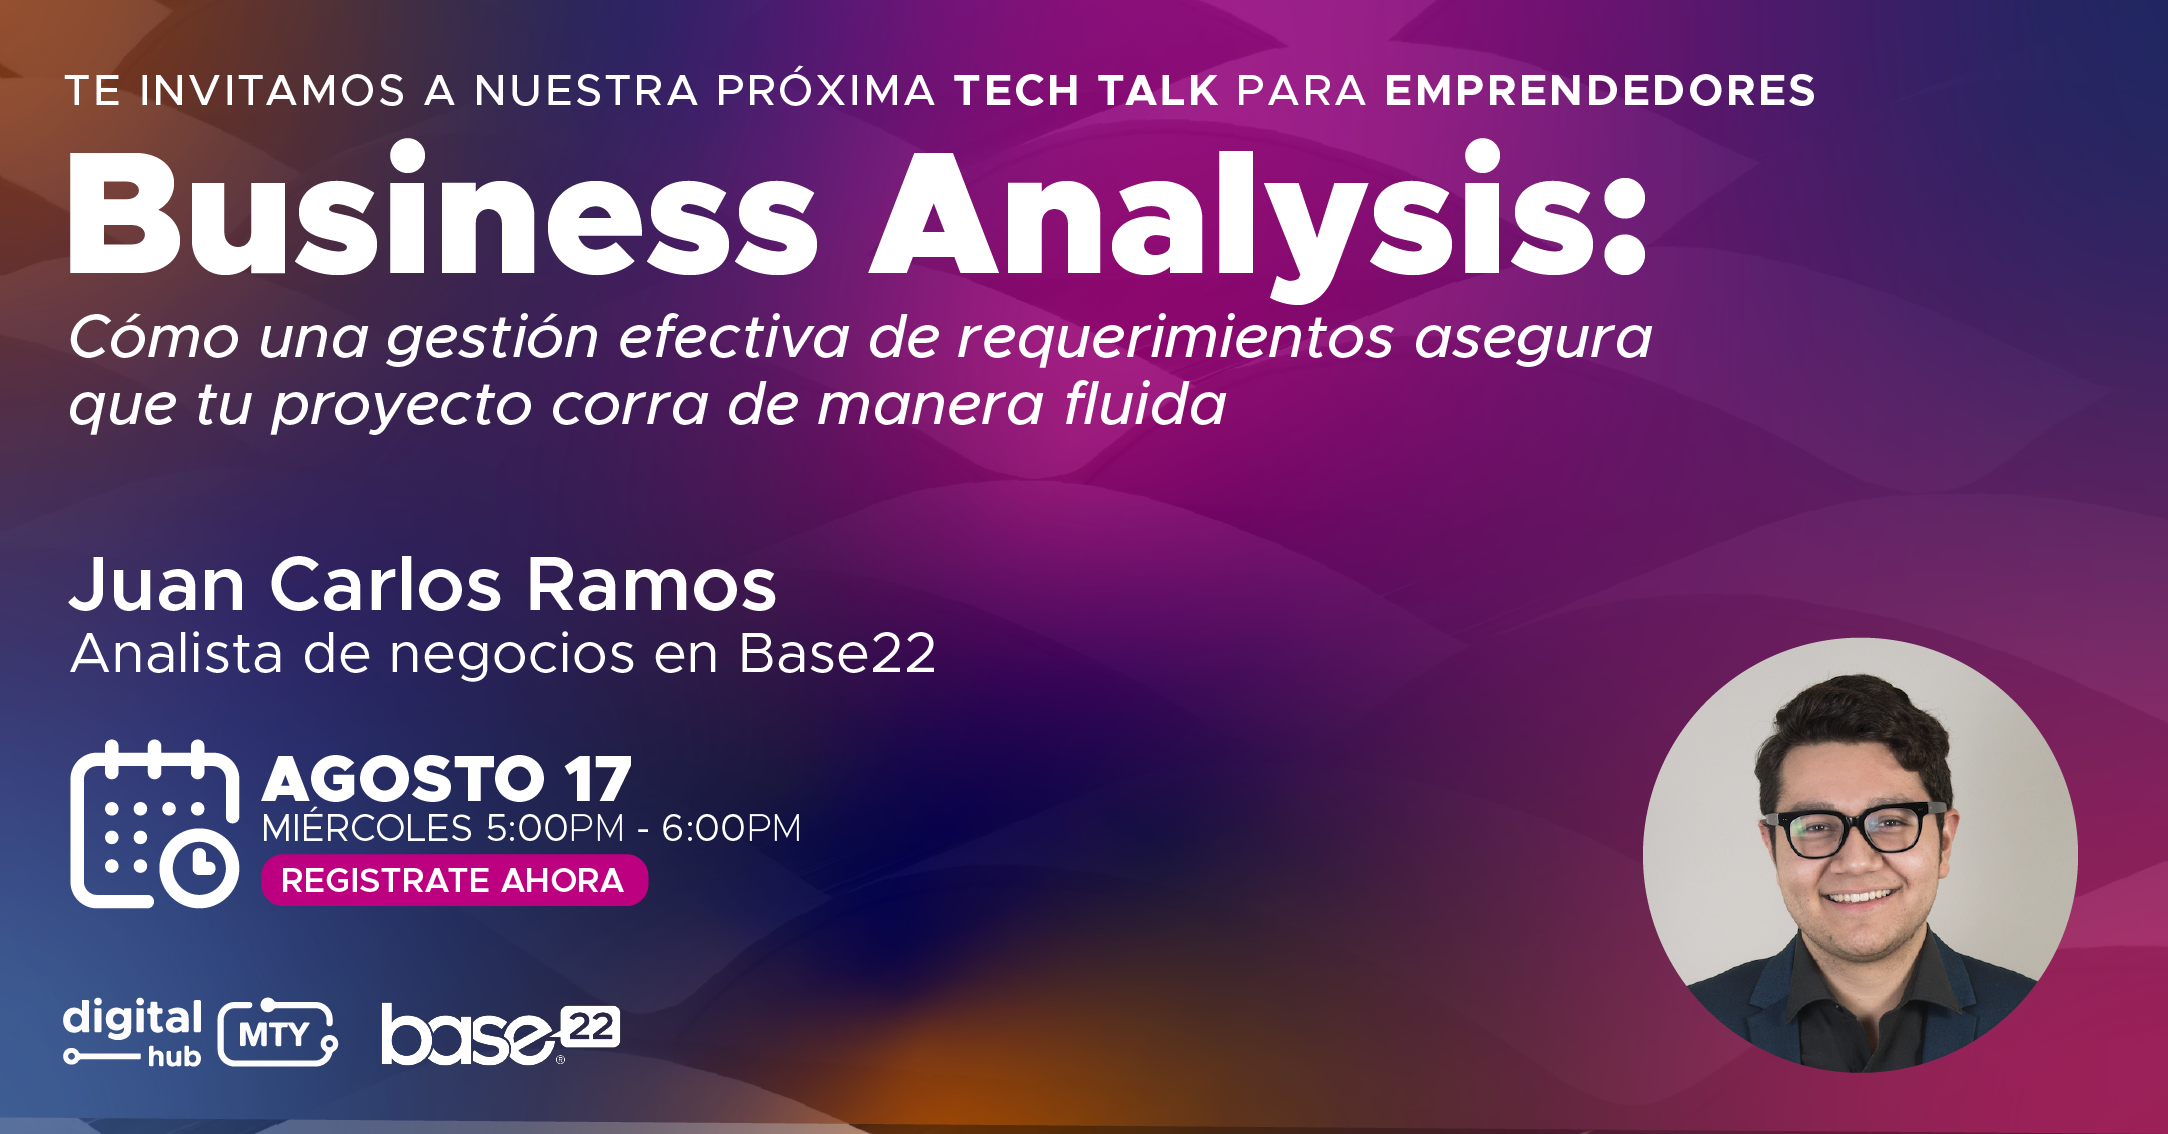 Nueva plática de Business Analysis con Monterrey Digital Hub